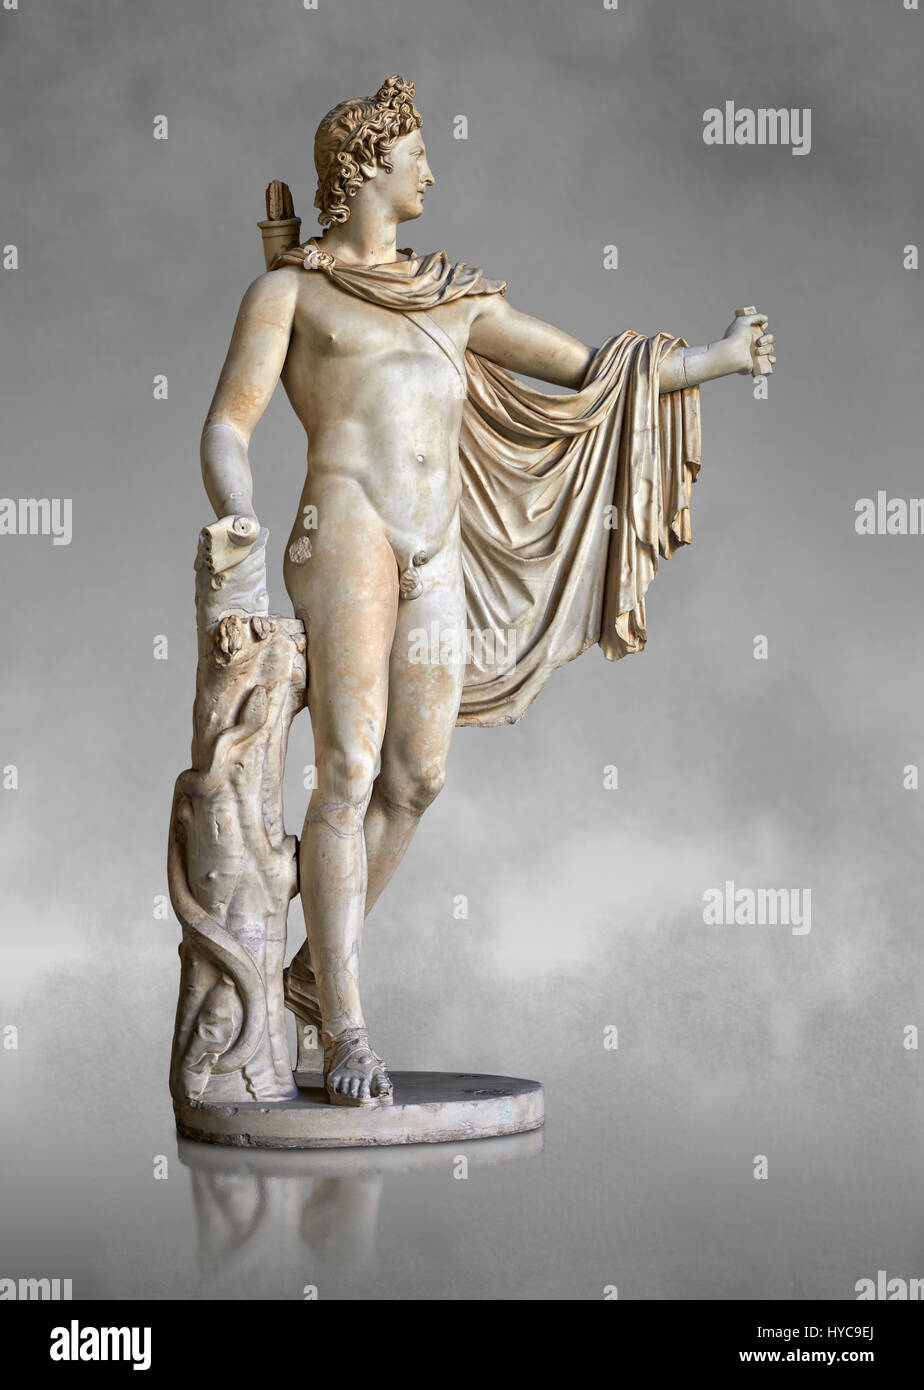 2 º siglo DC estatua romana de Apolo, conocido como el Belvederre Apollo.  La estatua de Apolo tenía originalmente un arco en su mano izquierda y  Apollo es depiceted Fotografía de stock -